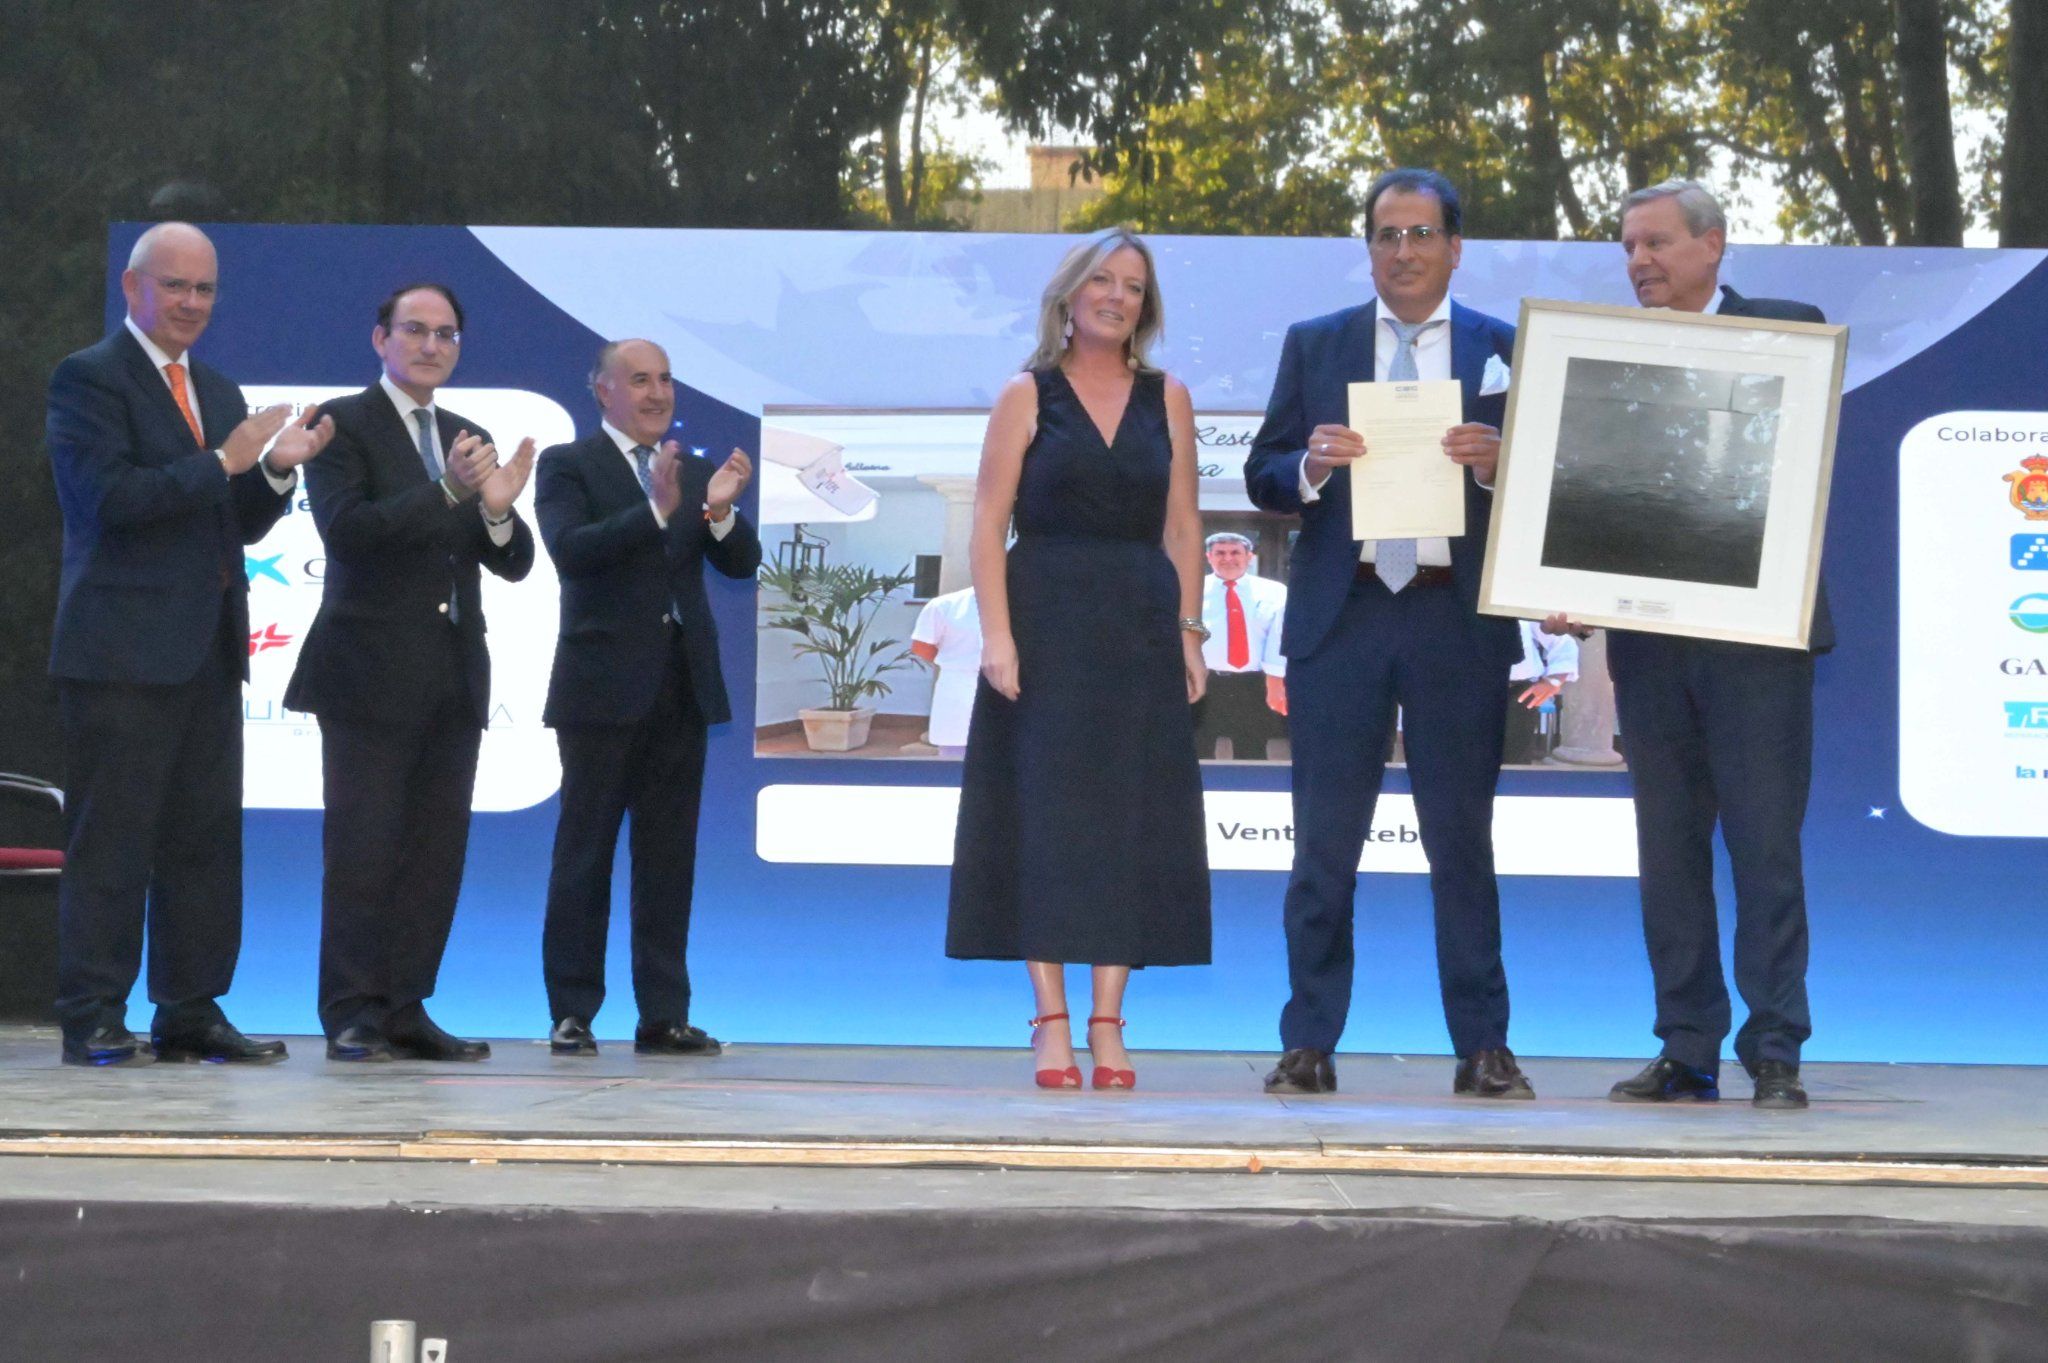 José Ballesteros, del Restaurante Venta Esteban de Jerez, recibe el premio por la trayectoria y labor de su negocio.